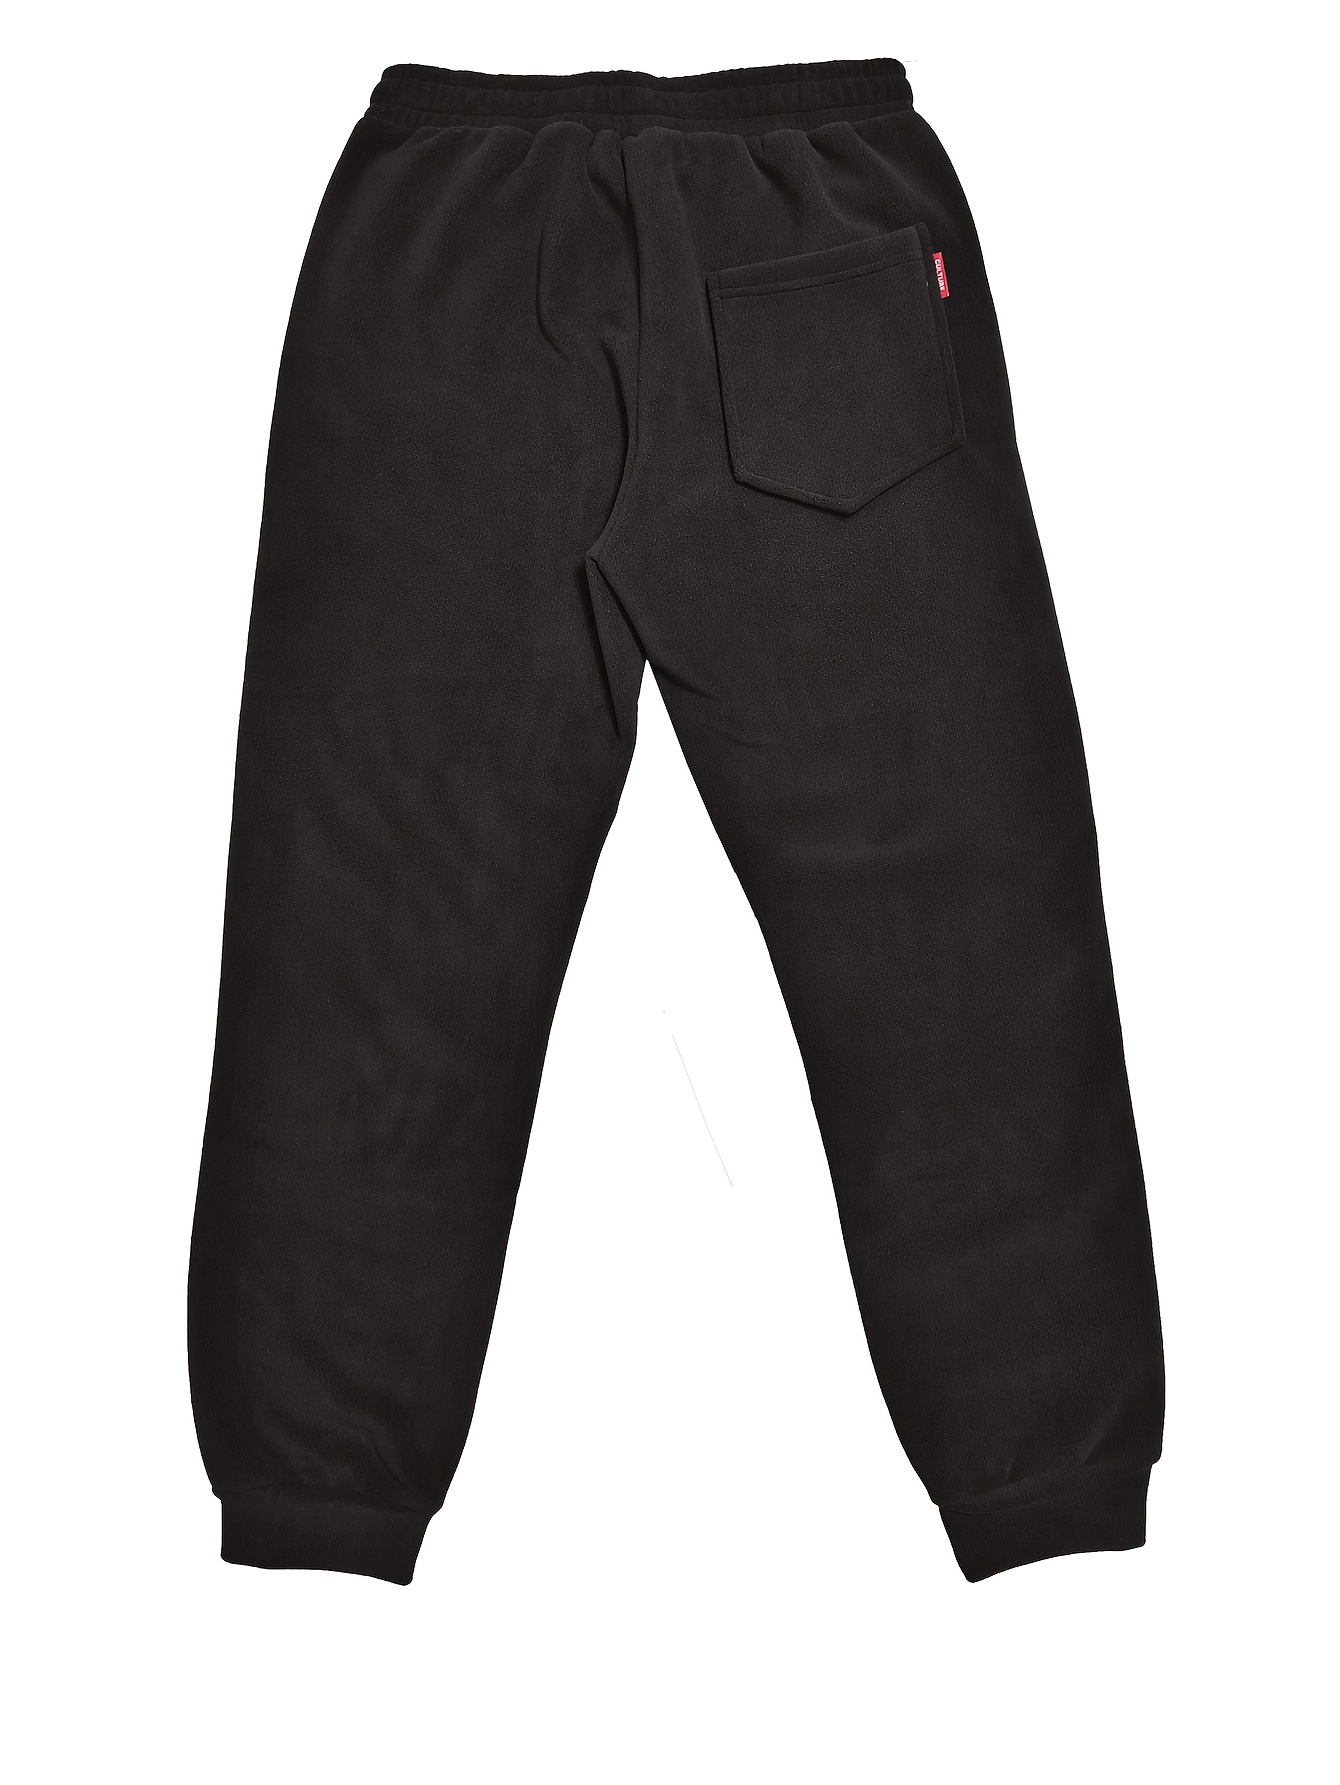 Pantalones de caza cálidos hombre Polar Lined Camo CE - Ducatillon